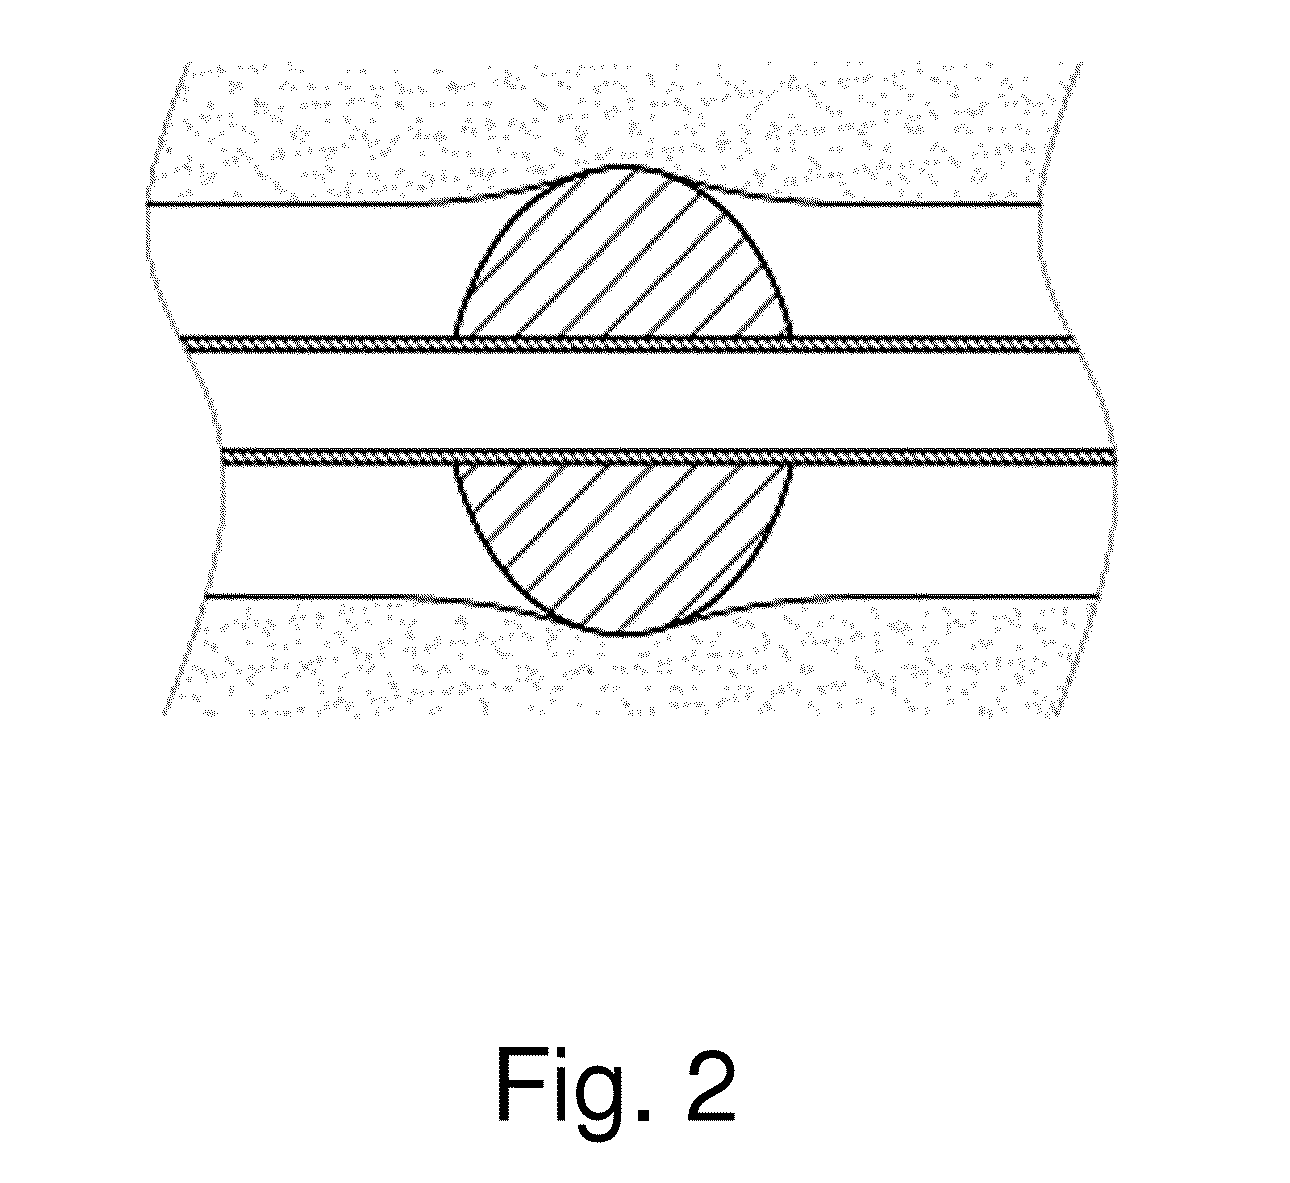 Endotracheal tube comprising corrugated cuff